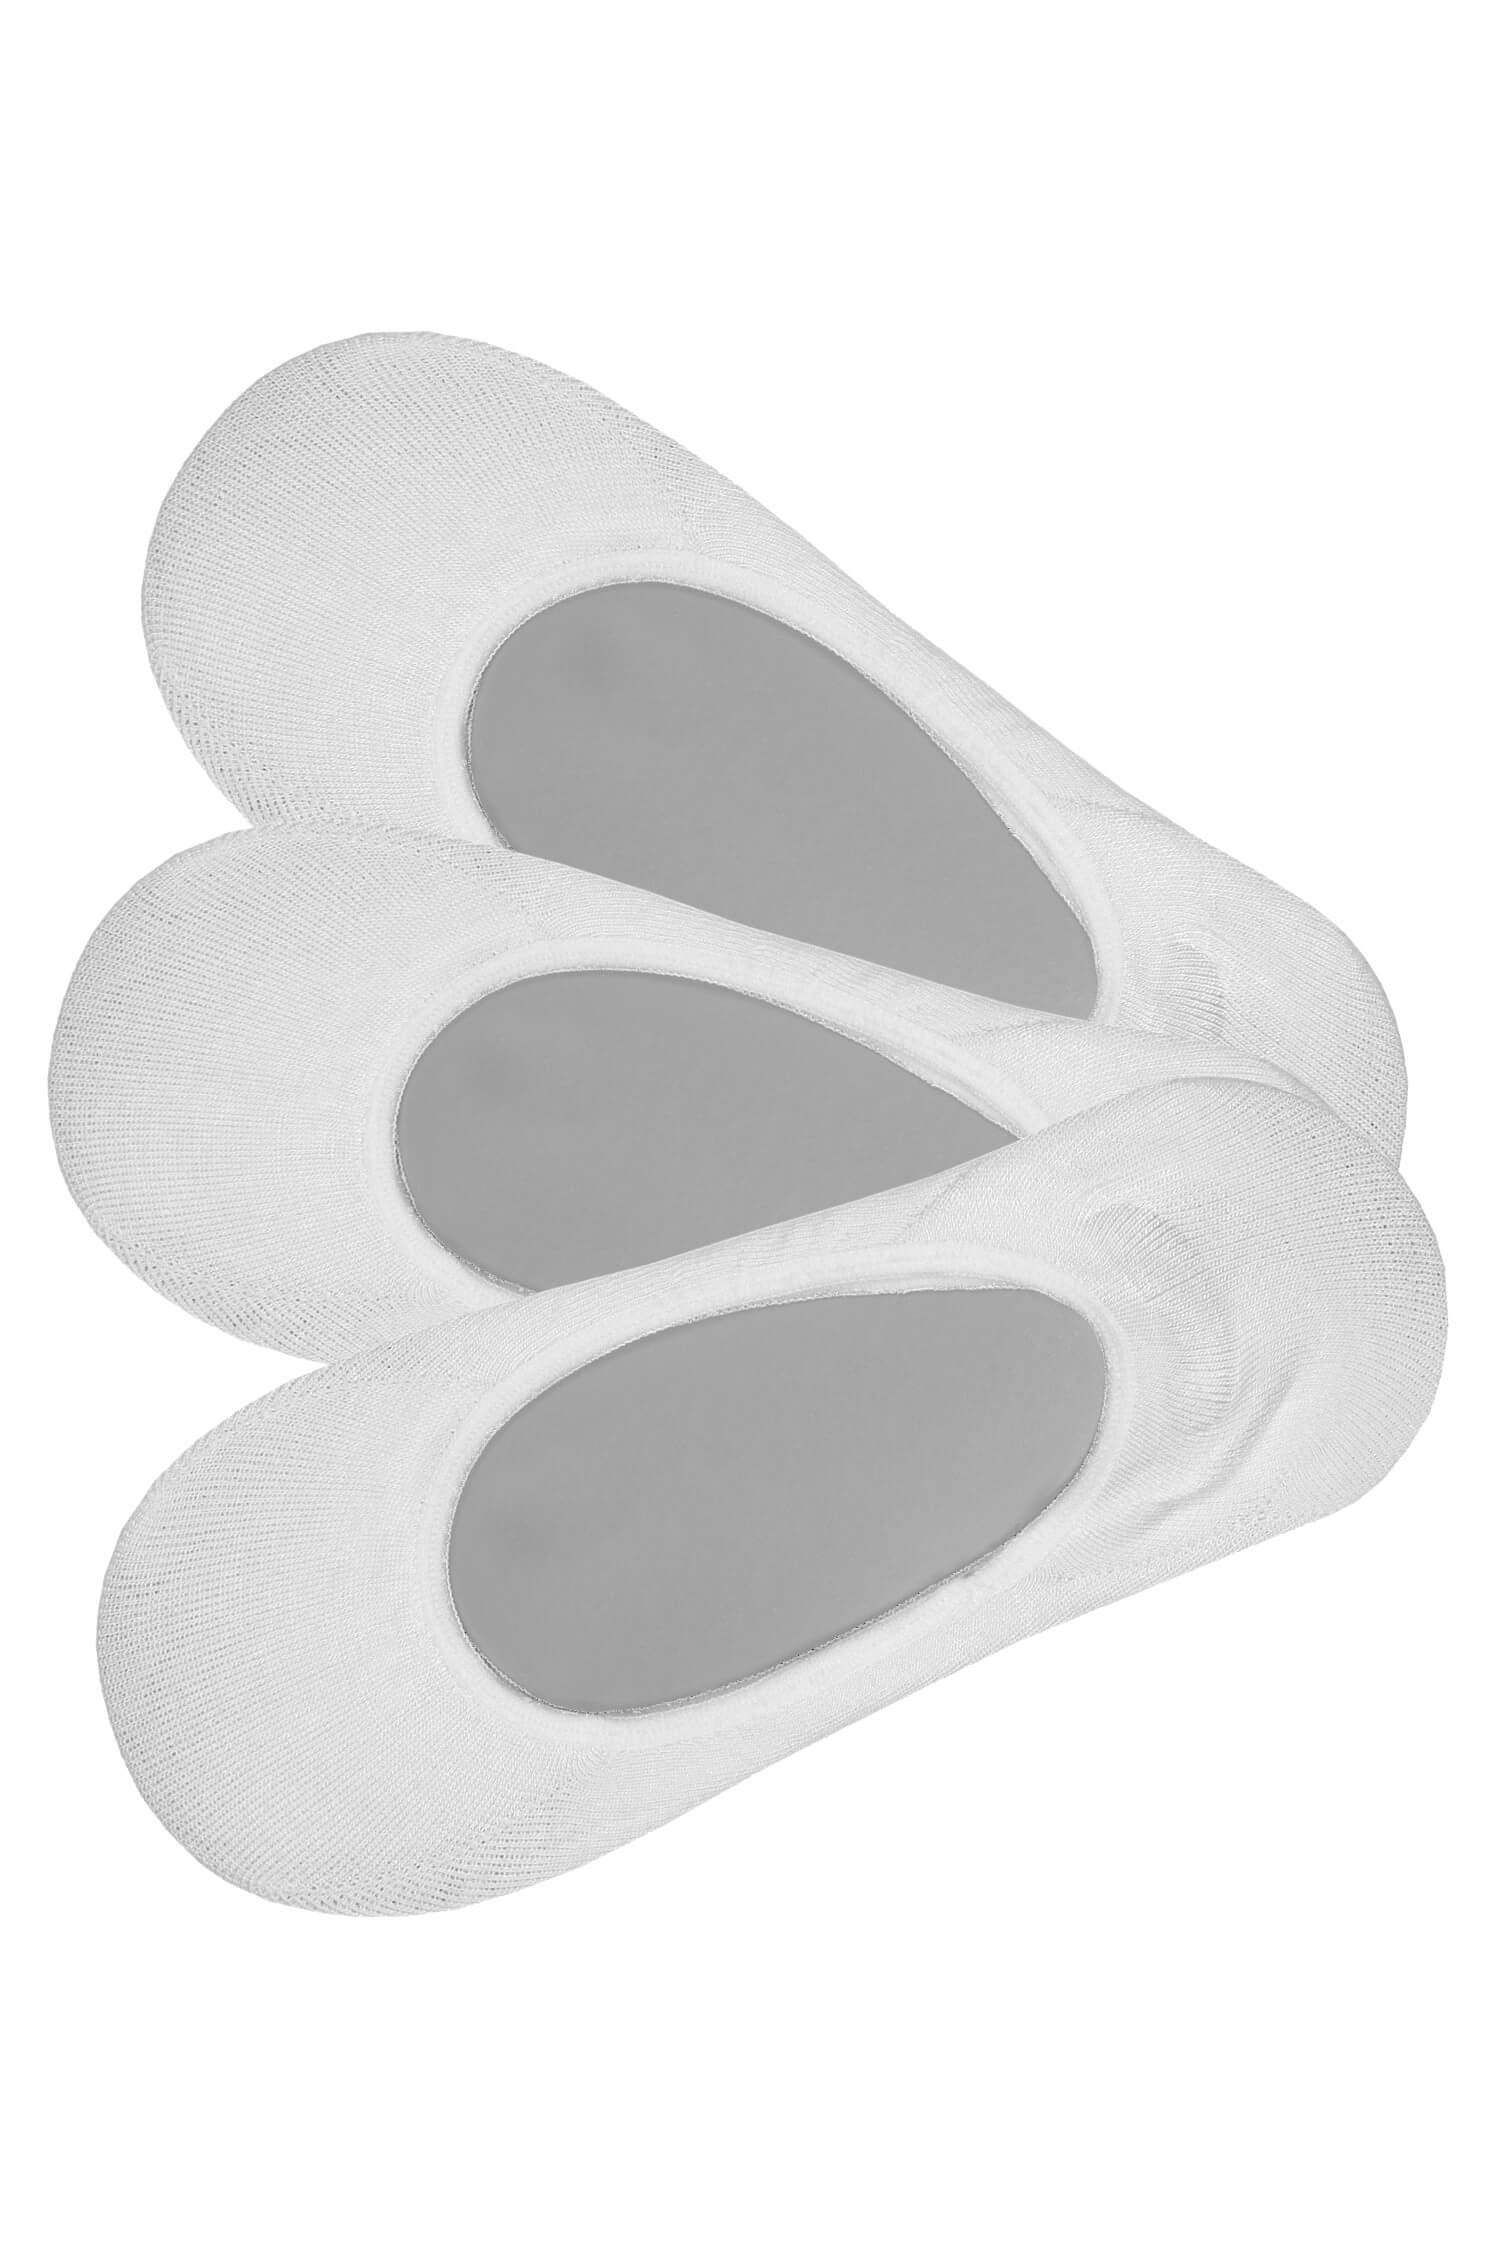 Pánské neviditelné ponožky bavlna 3bal 43-46 bílá